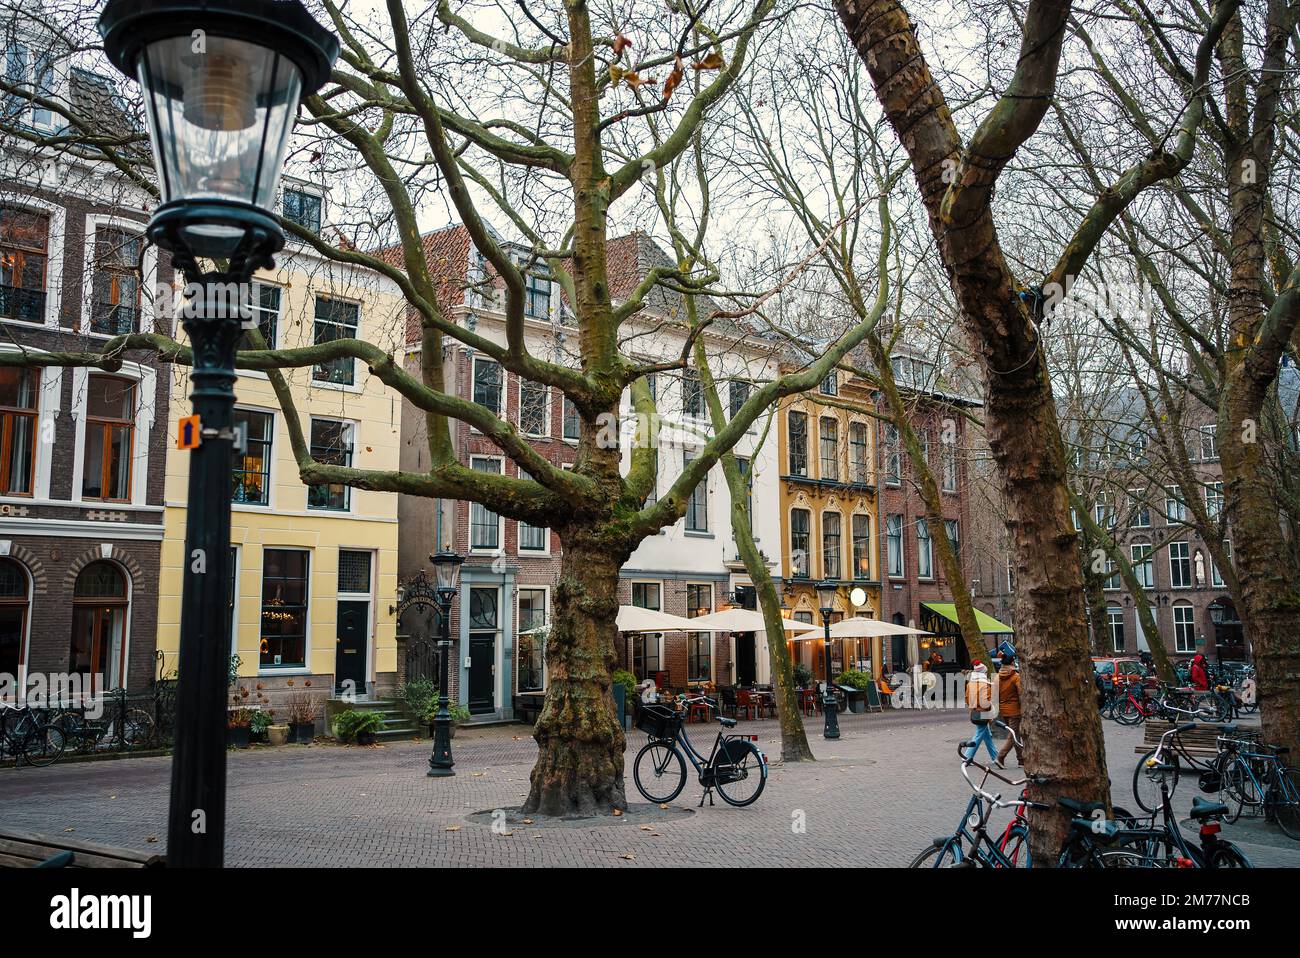 Centro storico di Utrecht, Olanda - vista sulla piazza vecchia con caffè, ristoranti e negozi in inverno o in autunno Foto Stock